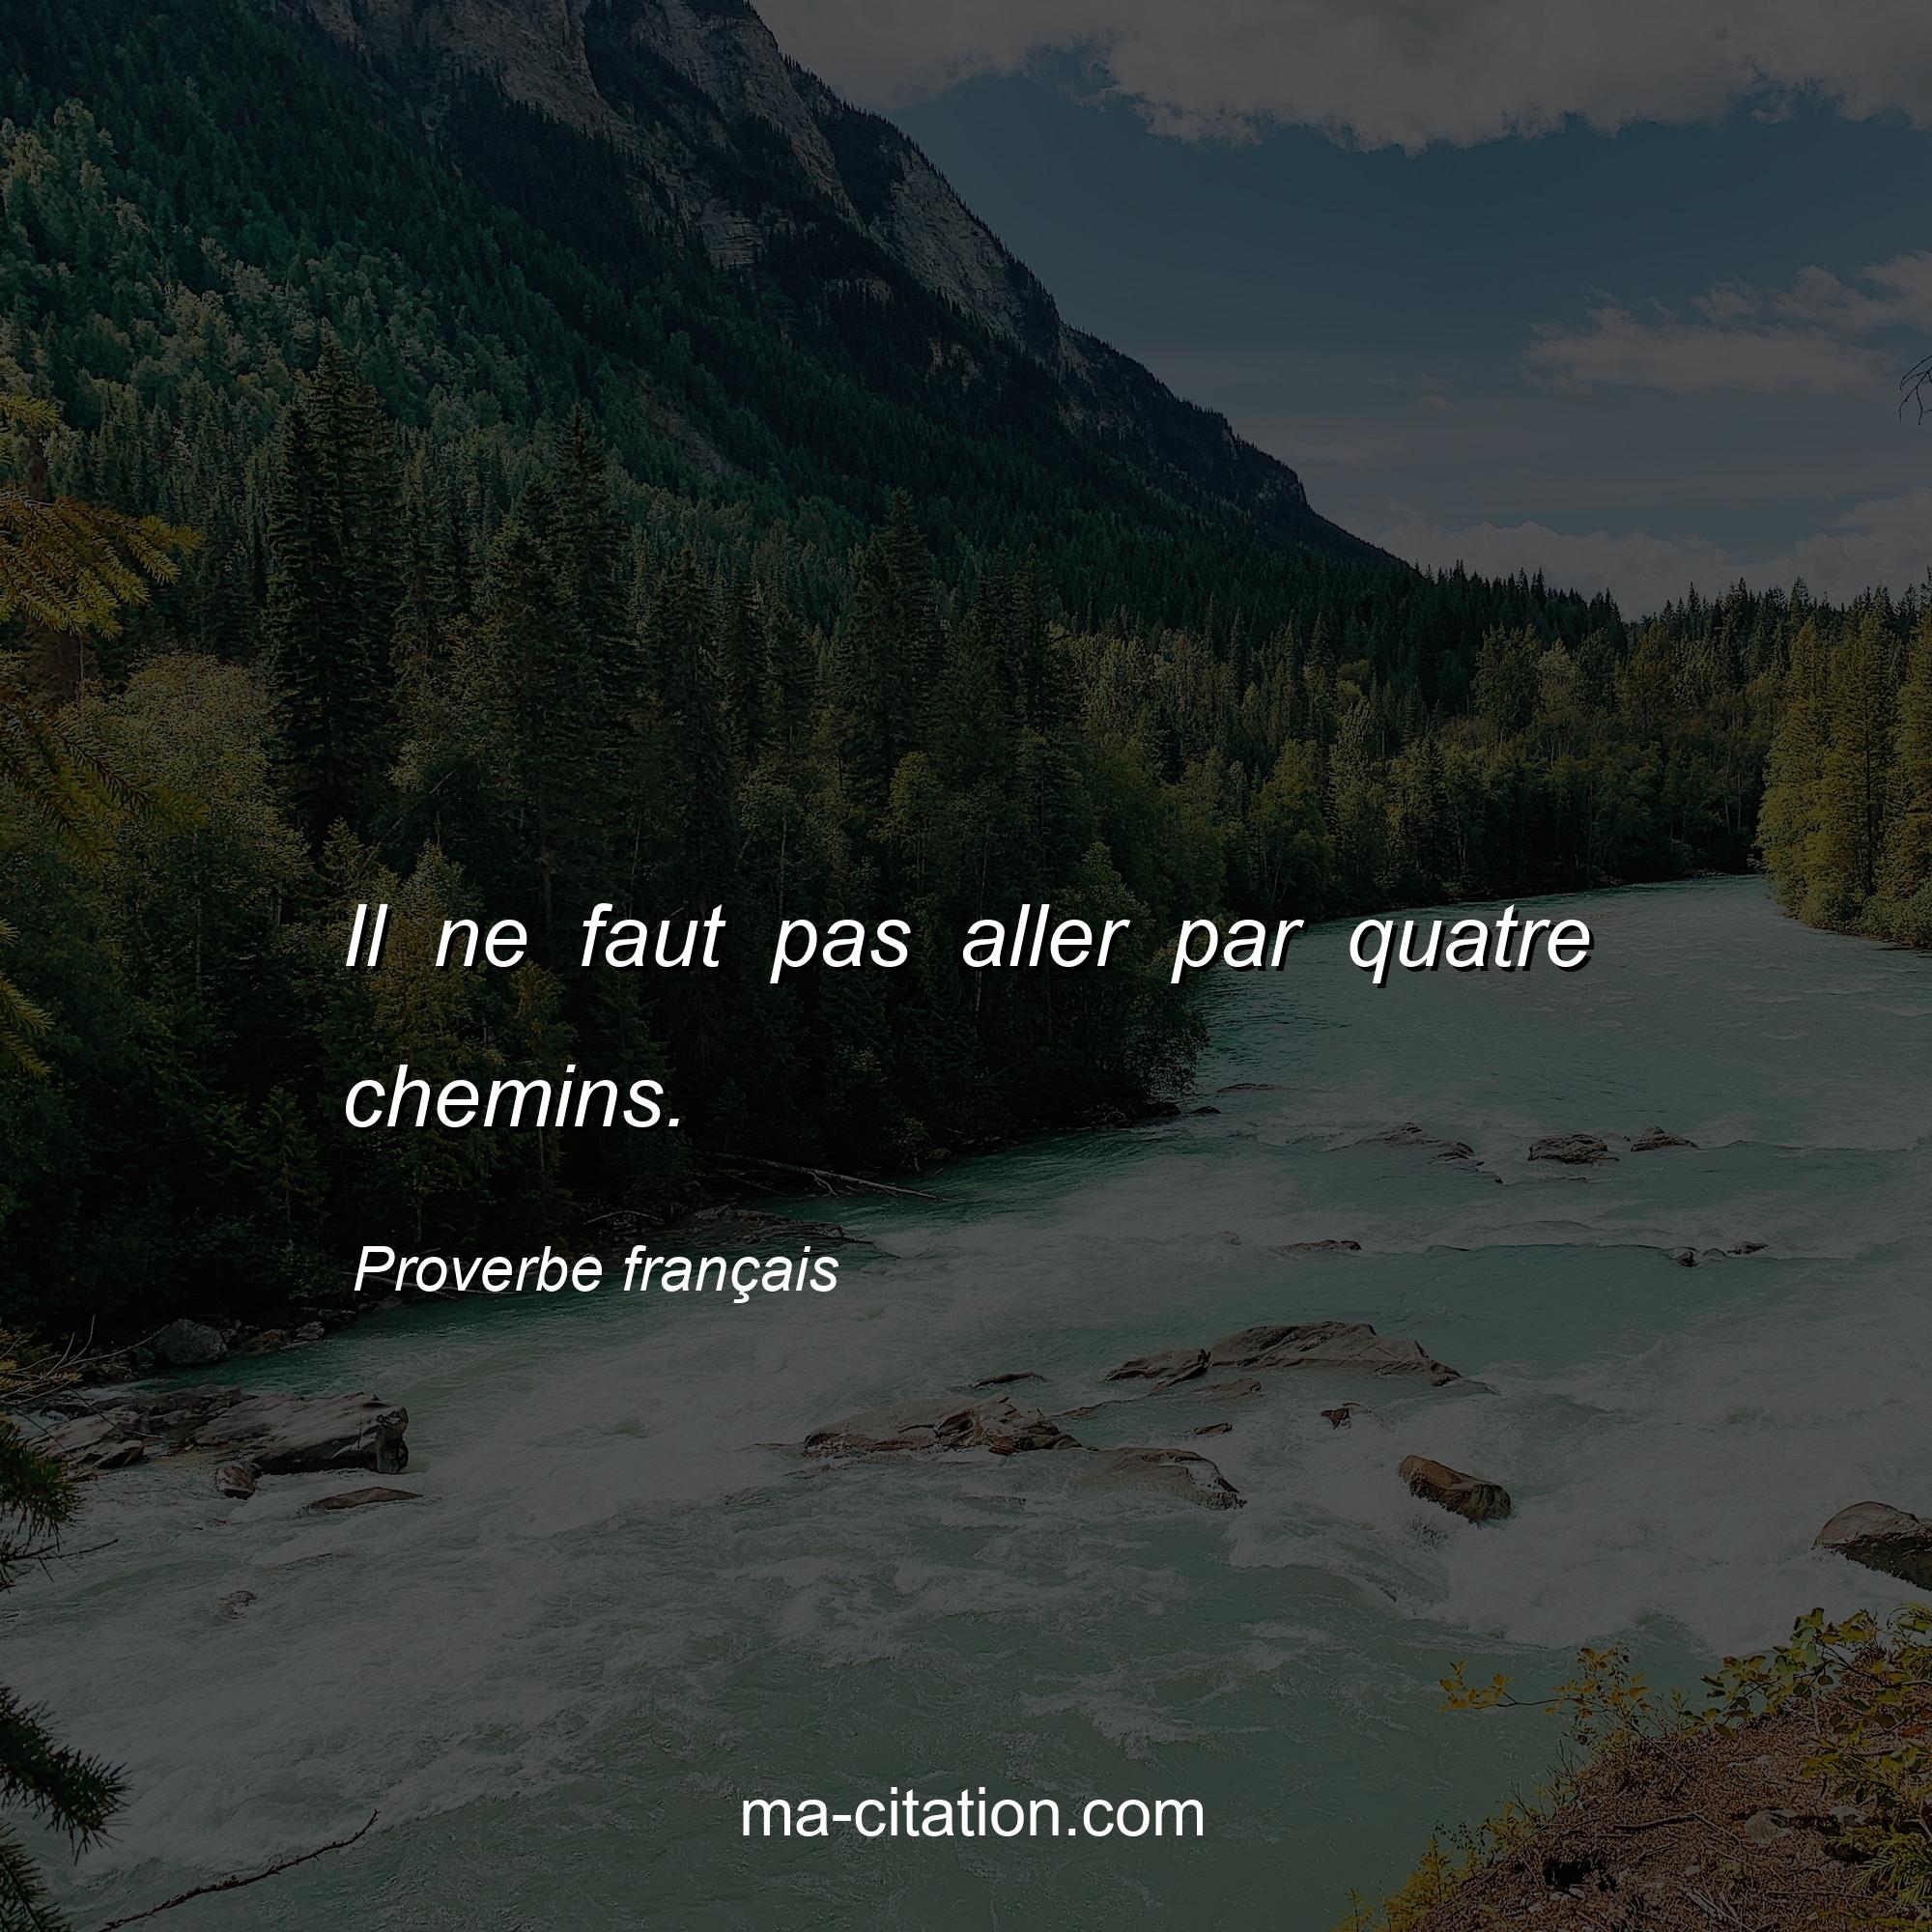 Proverbe français : Il ne faut pas aller par quatre chemins.